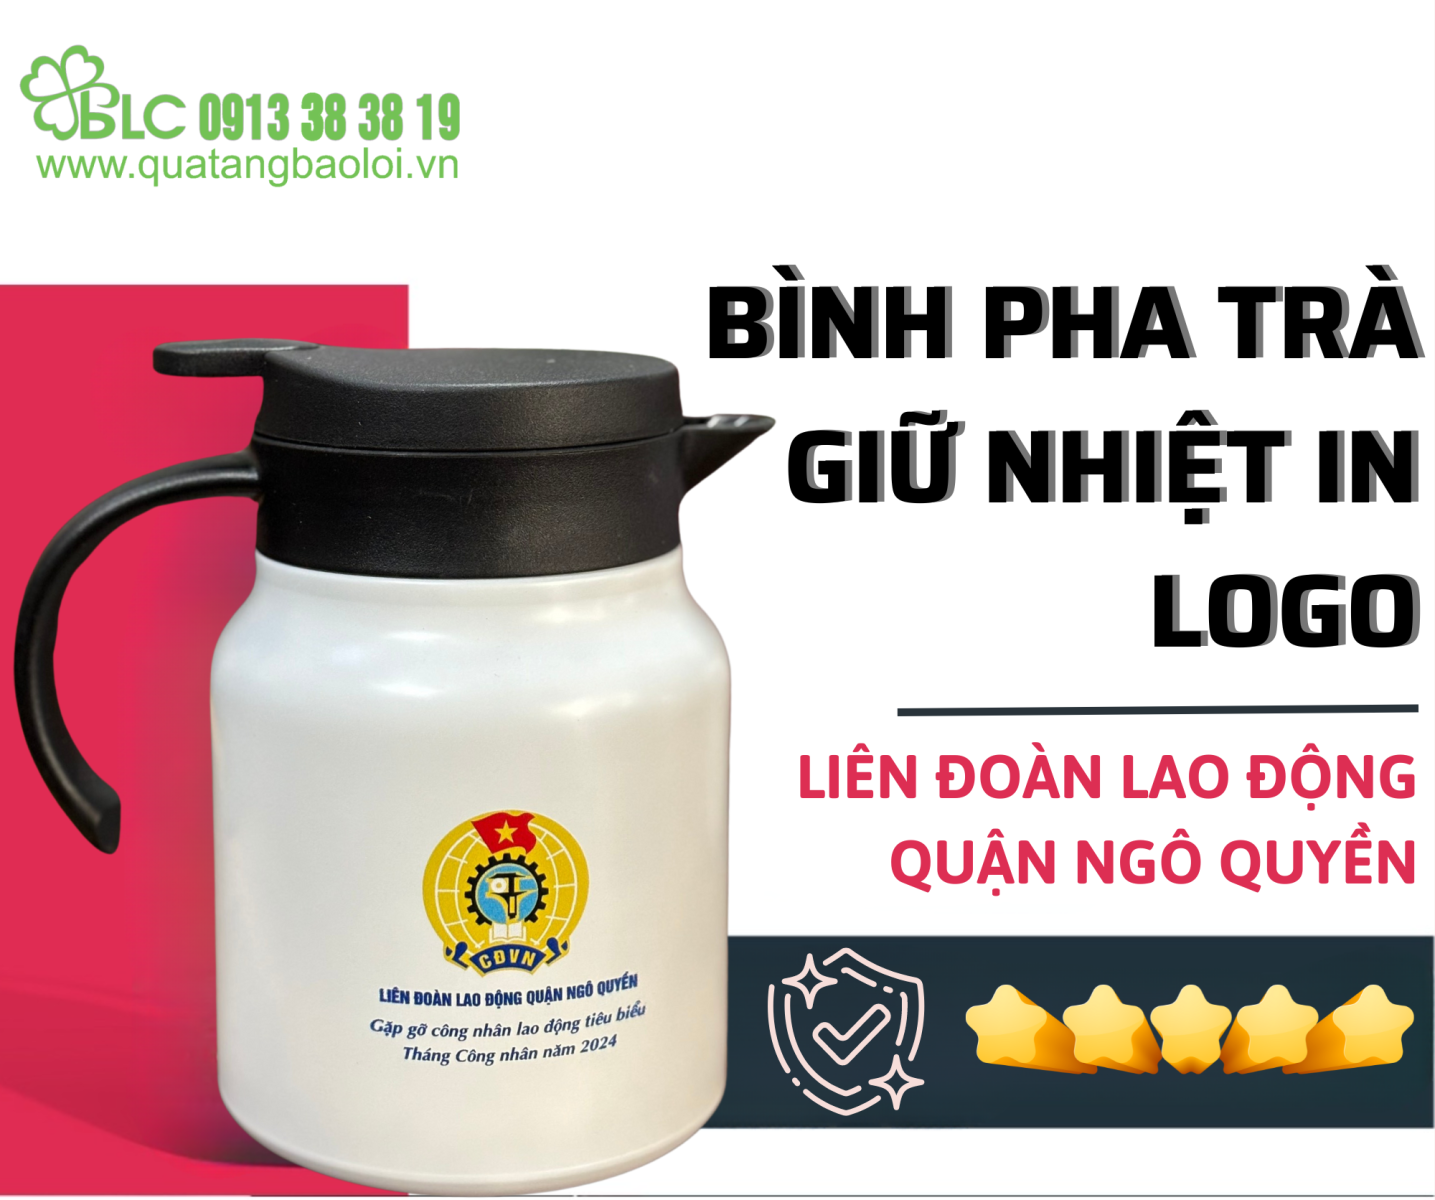 BLC Gifts hợp tác với Liên Đoàn Lao Động Quận Ngô Quyền với bình pha trà giữ nhiệt in logo